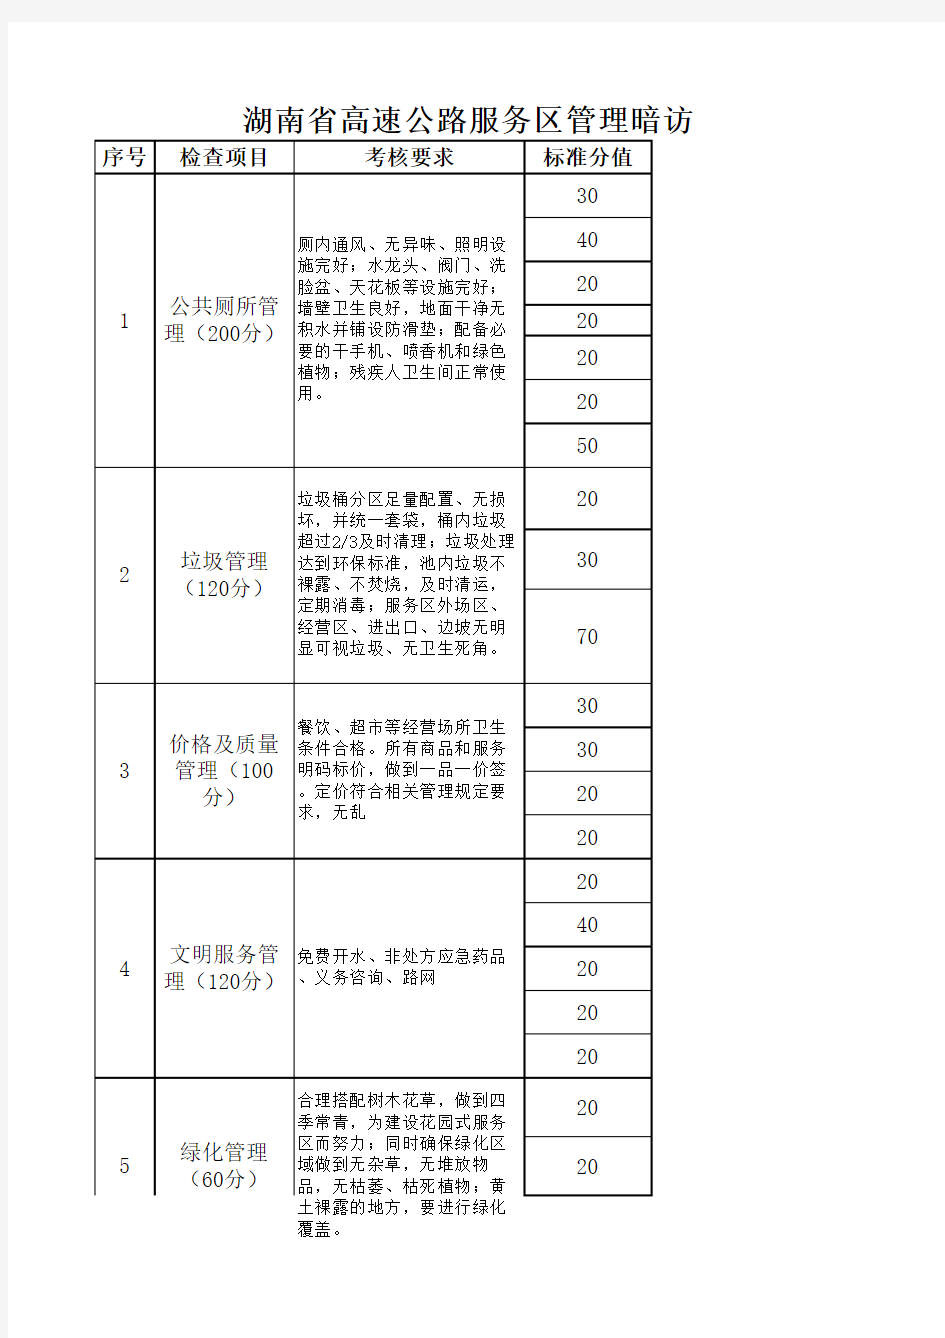 湖南省高速公路服务区管理暗访考核要求及评分标准